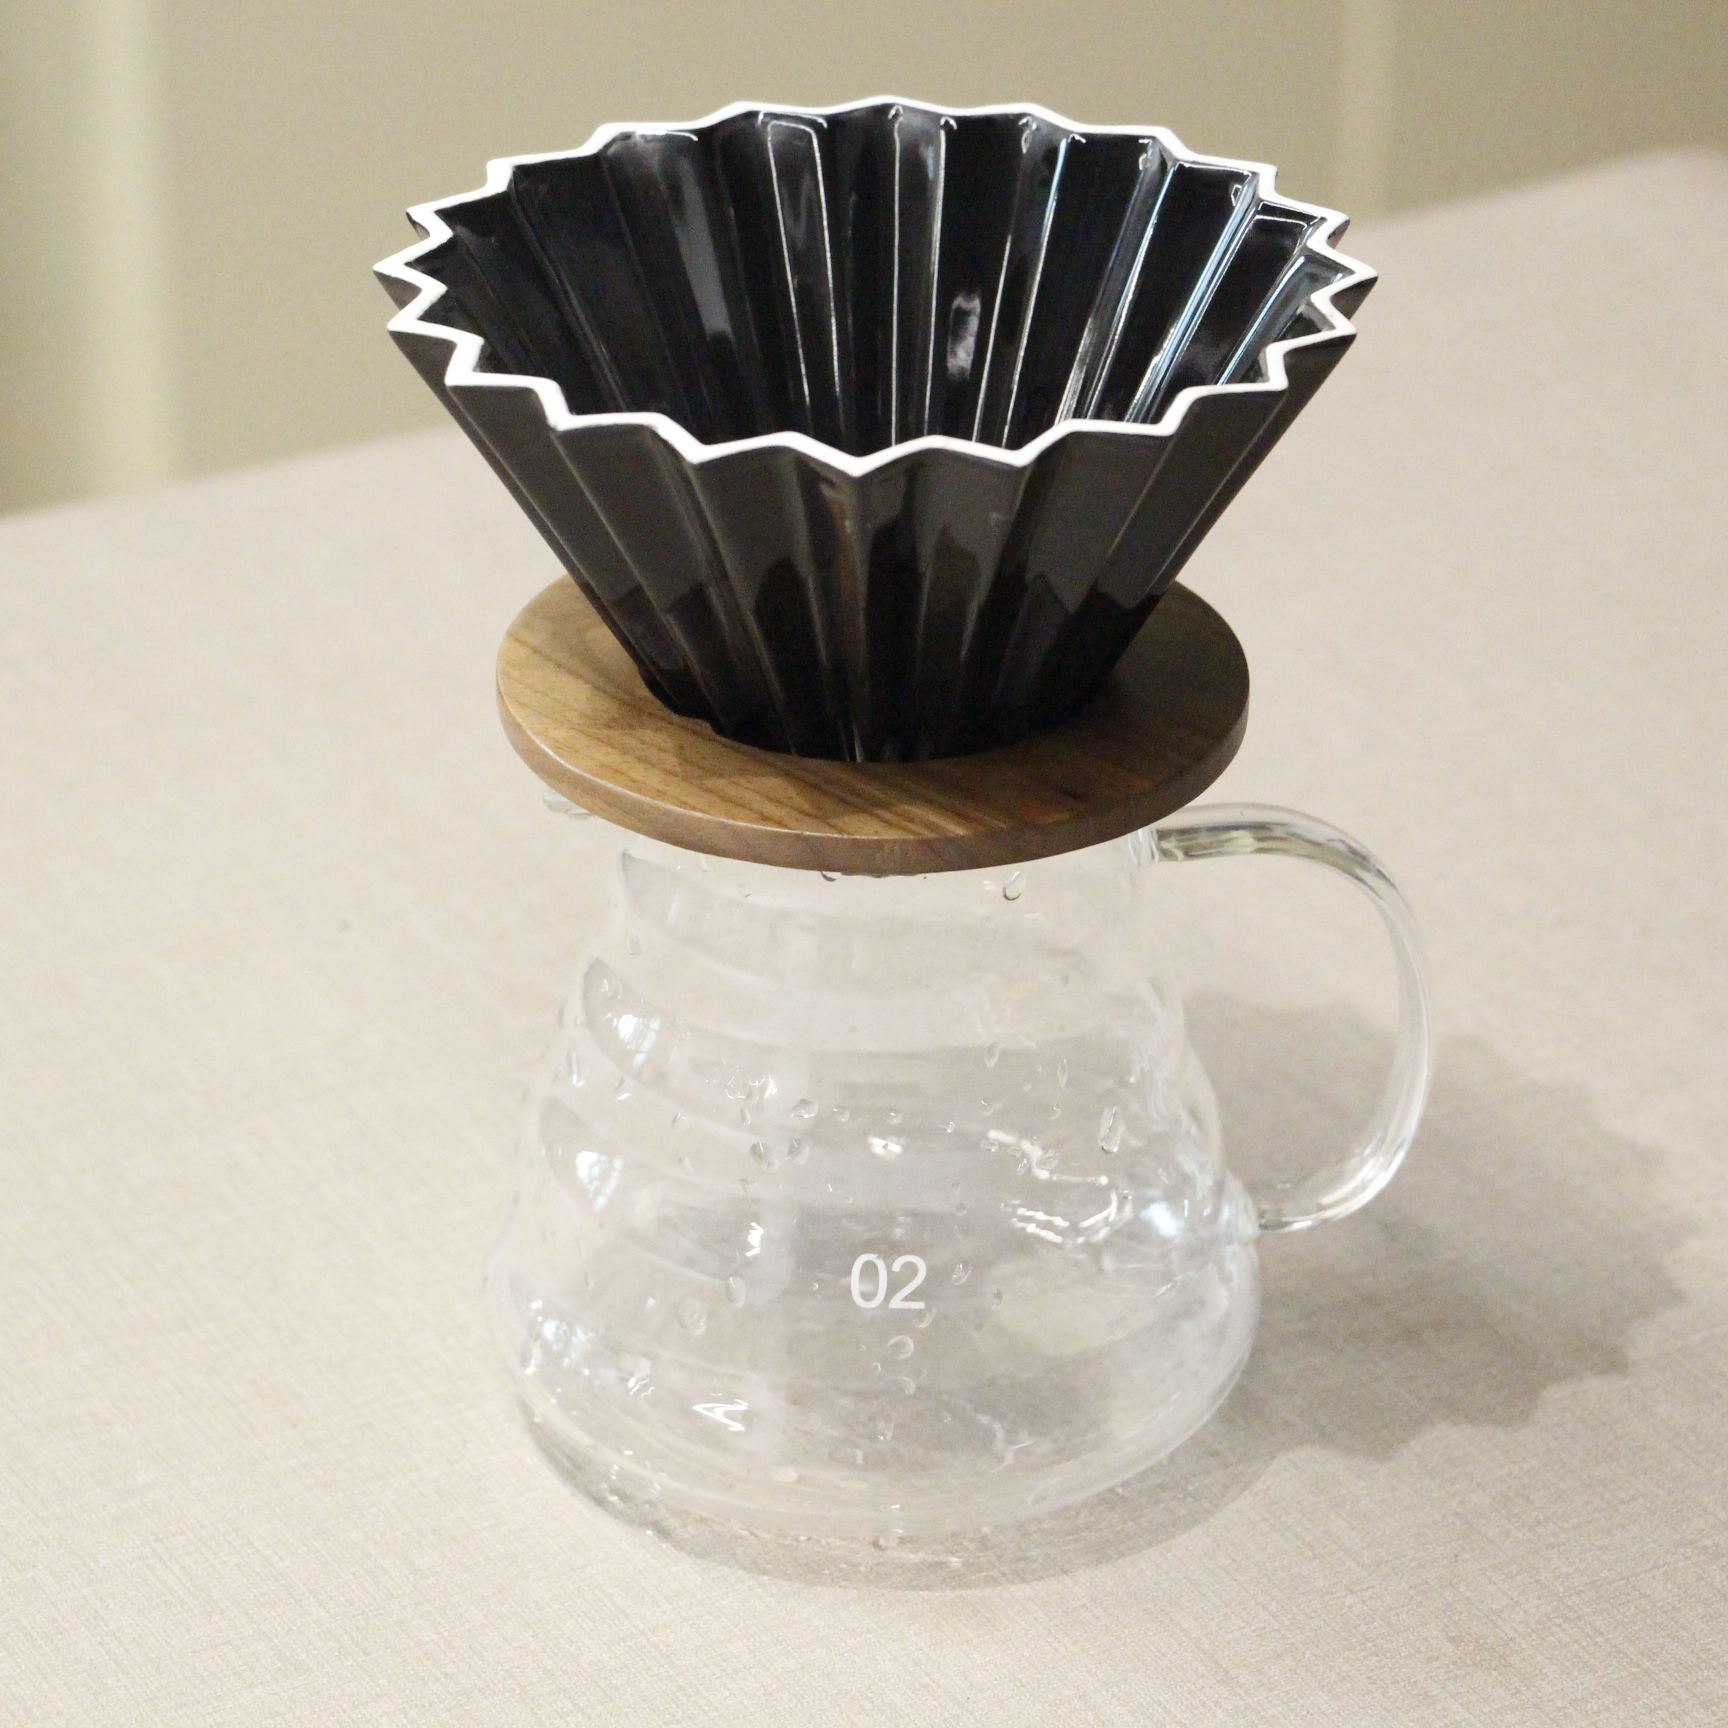 El V60 Origami te invita a explorar el mundo del café filtrado de manera única. Con su diseño floral y construcción en porcelana, prepara de 1 a 4 tazas de café con calidad excepcional. Experimenta la precisión y la elegancia en cada gota.